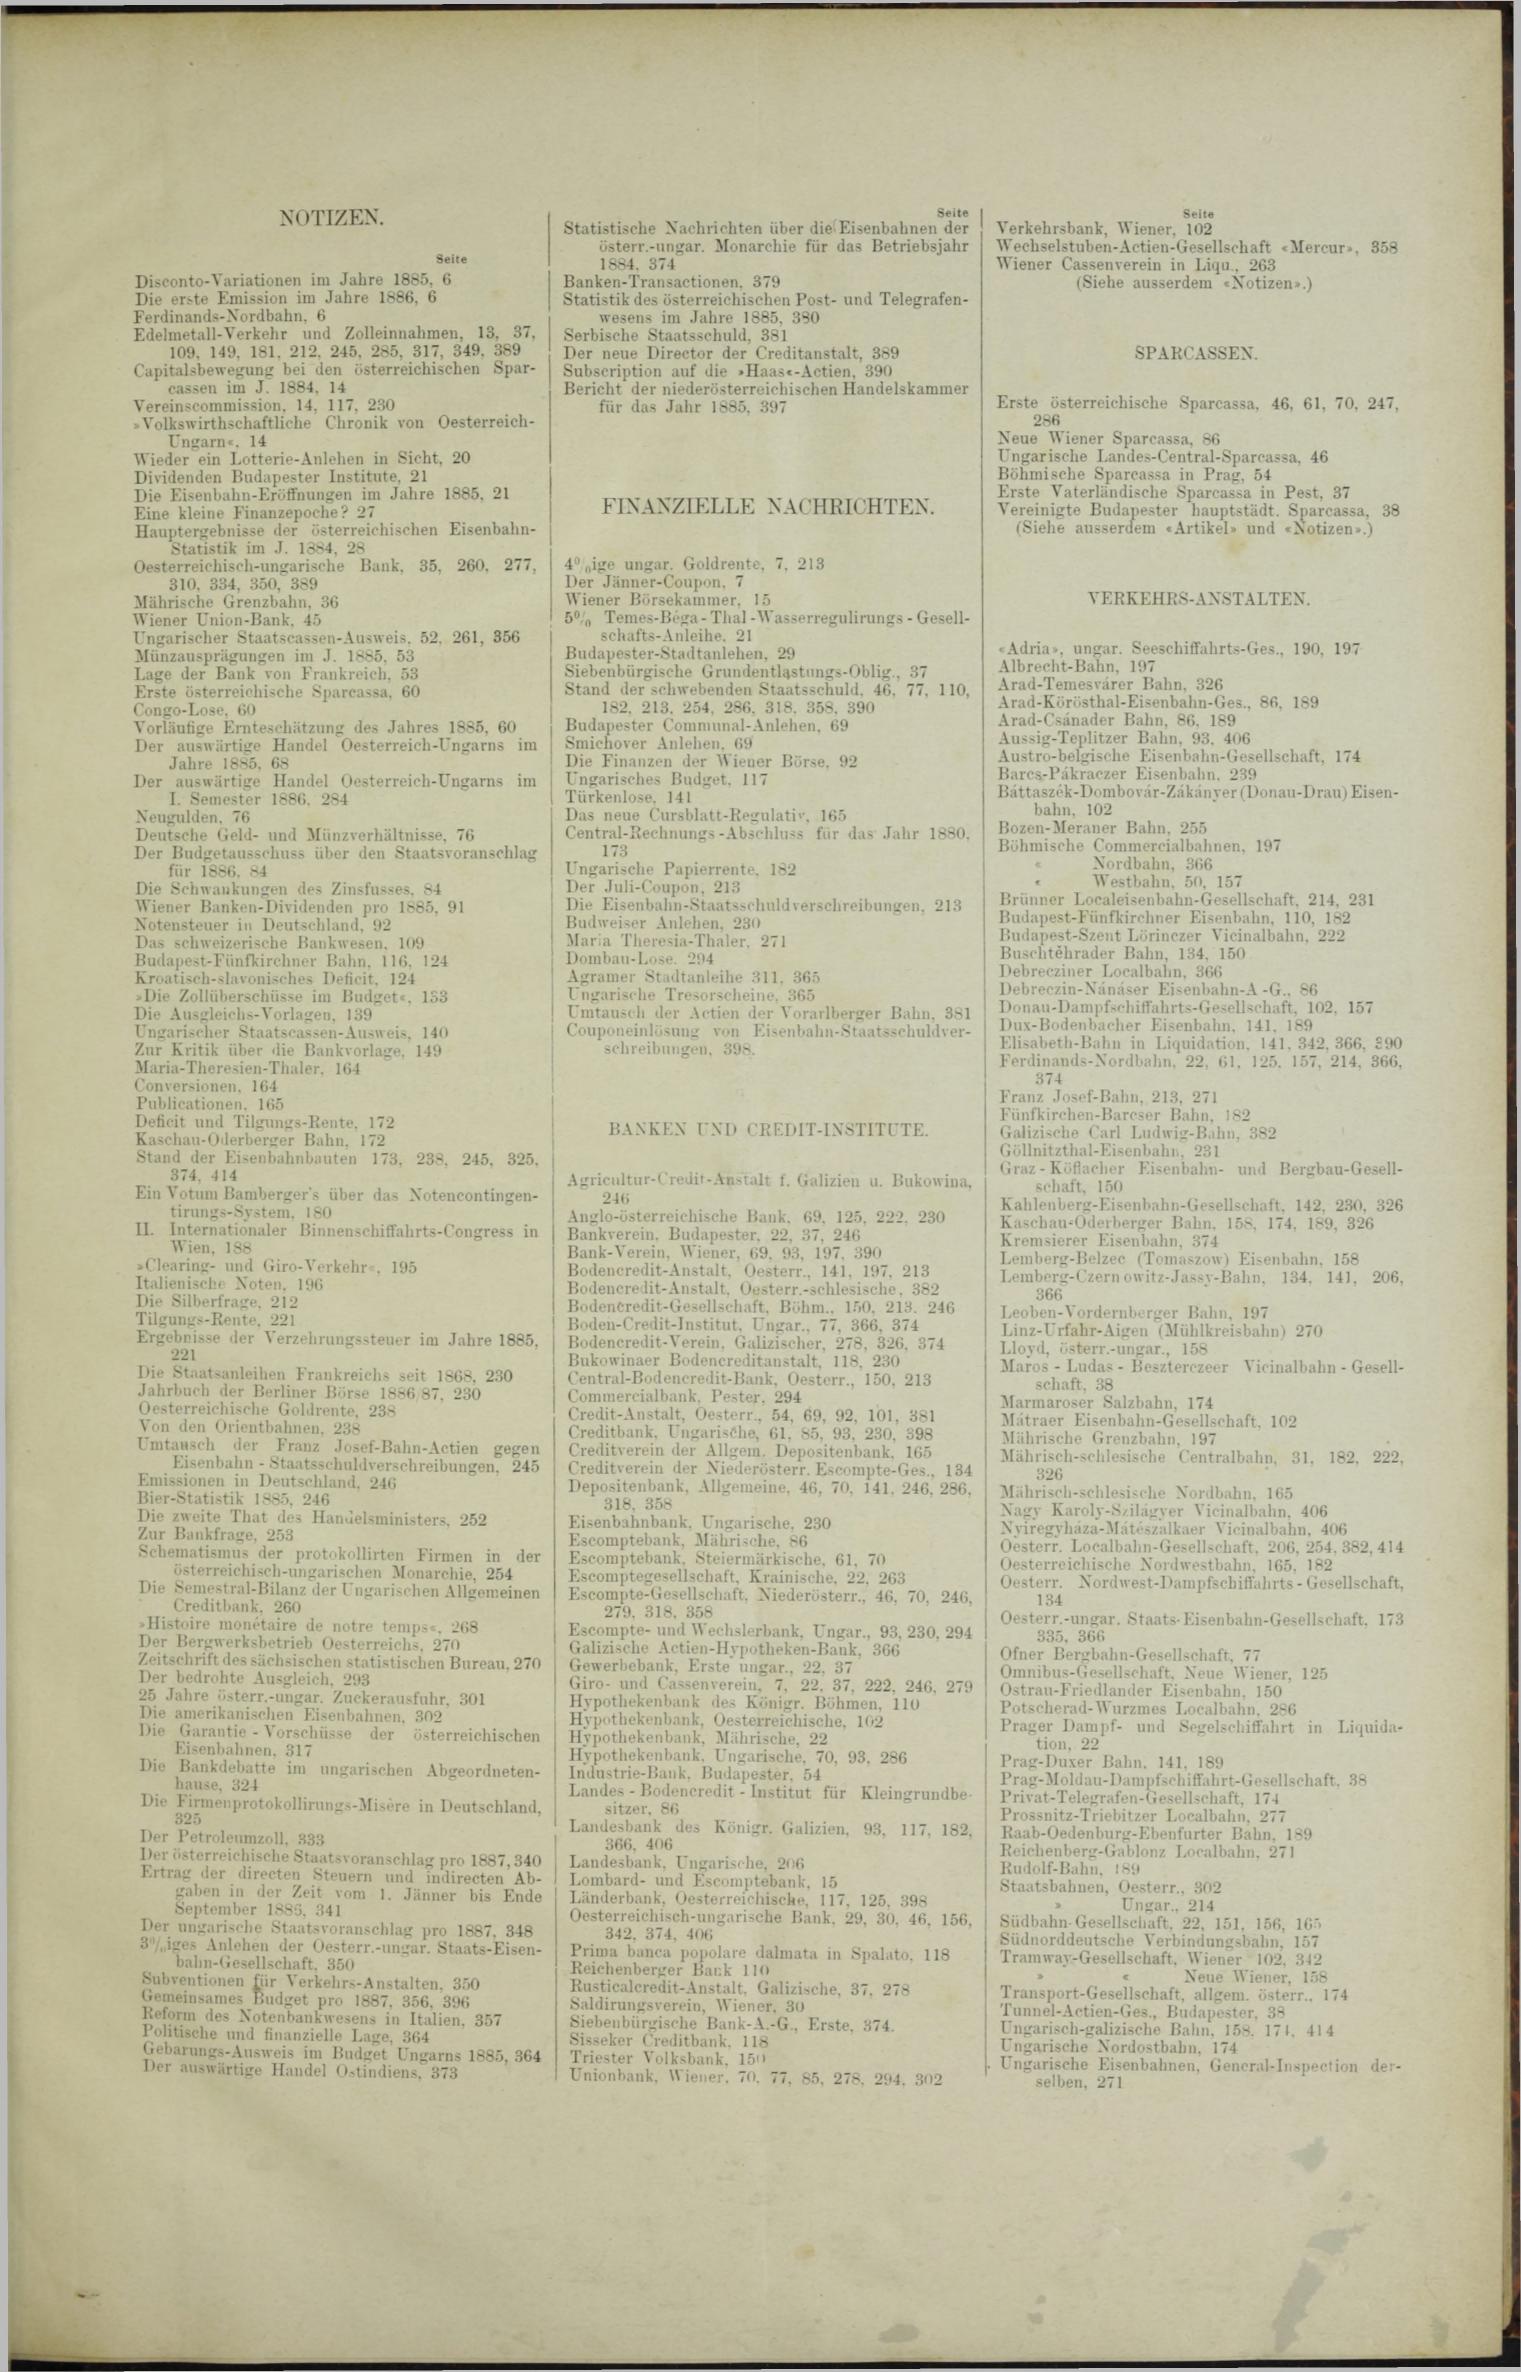 Der Tresor 09.12.1886 - Seite 11